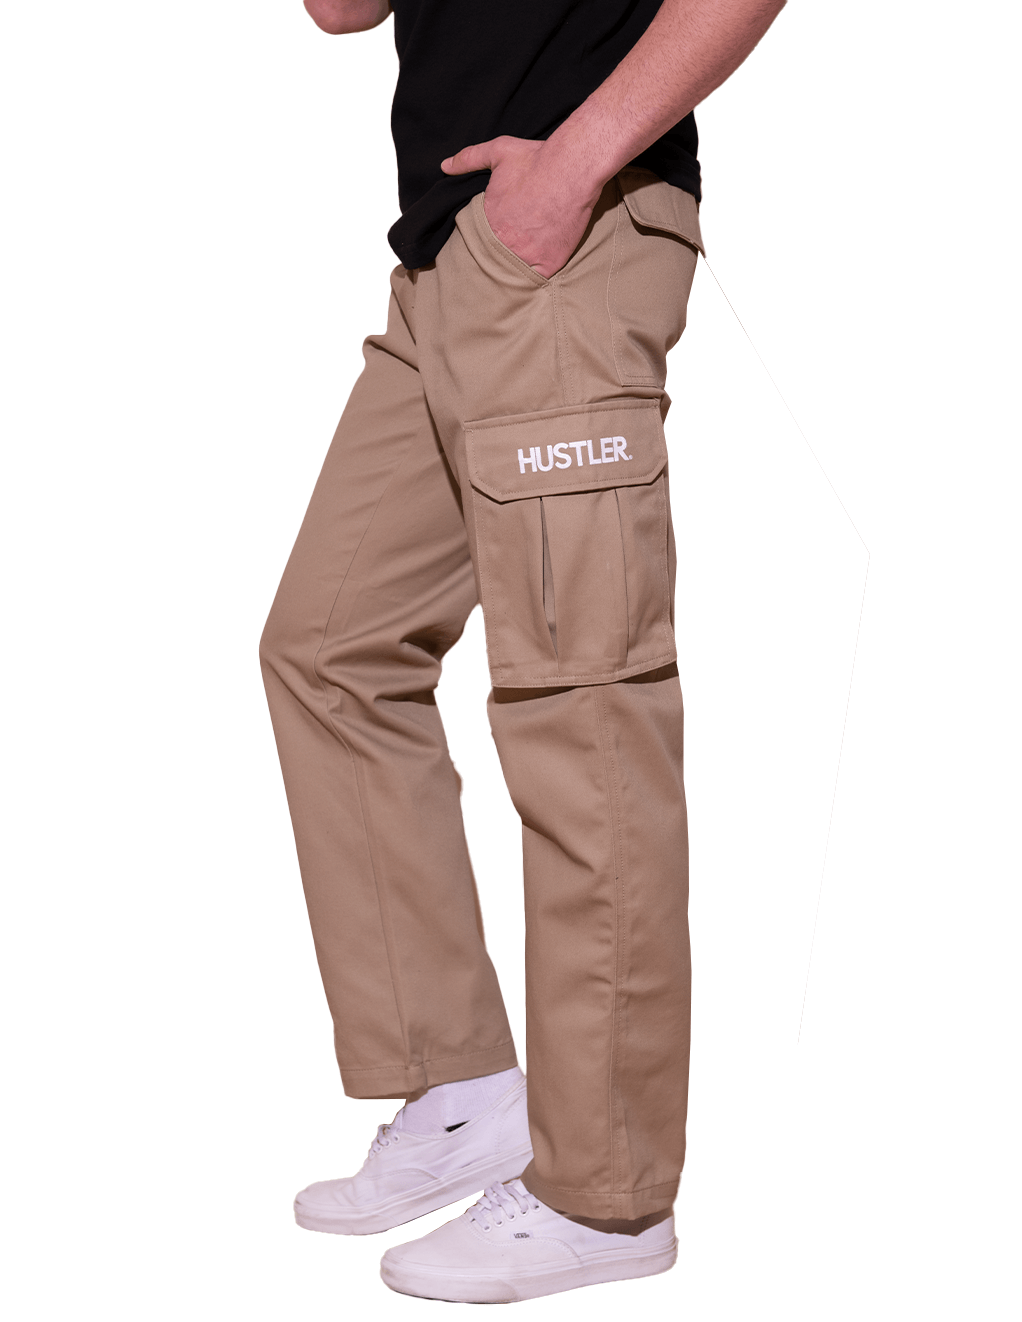 HUSTLER® Mens Cargo Pants - Khaki - Side